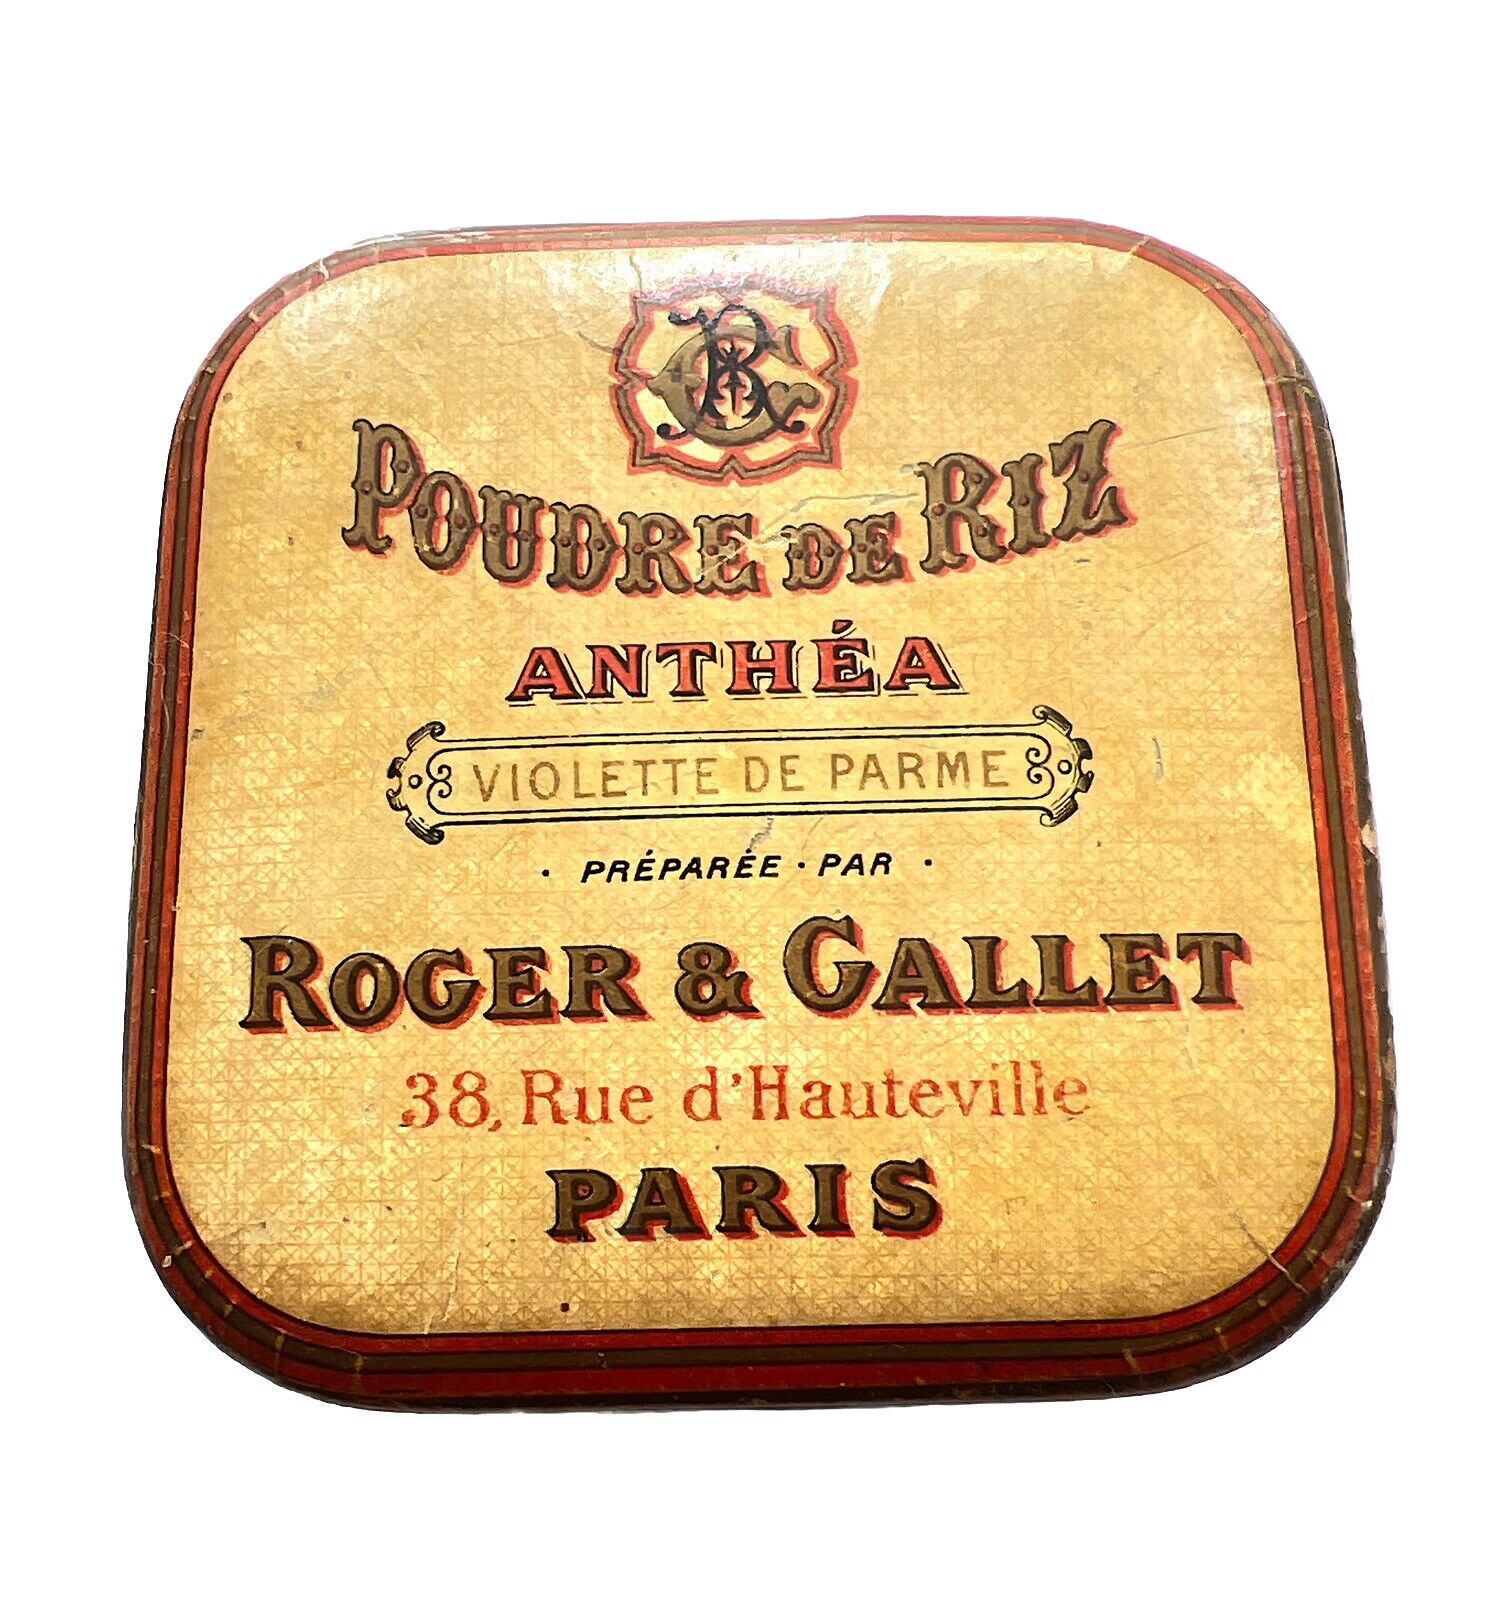 Vintage 1930 Roger & Gallet. face powder box, Poudre de Riz Anthea